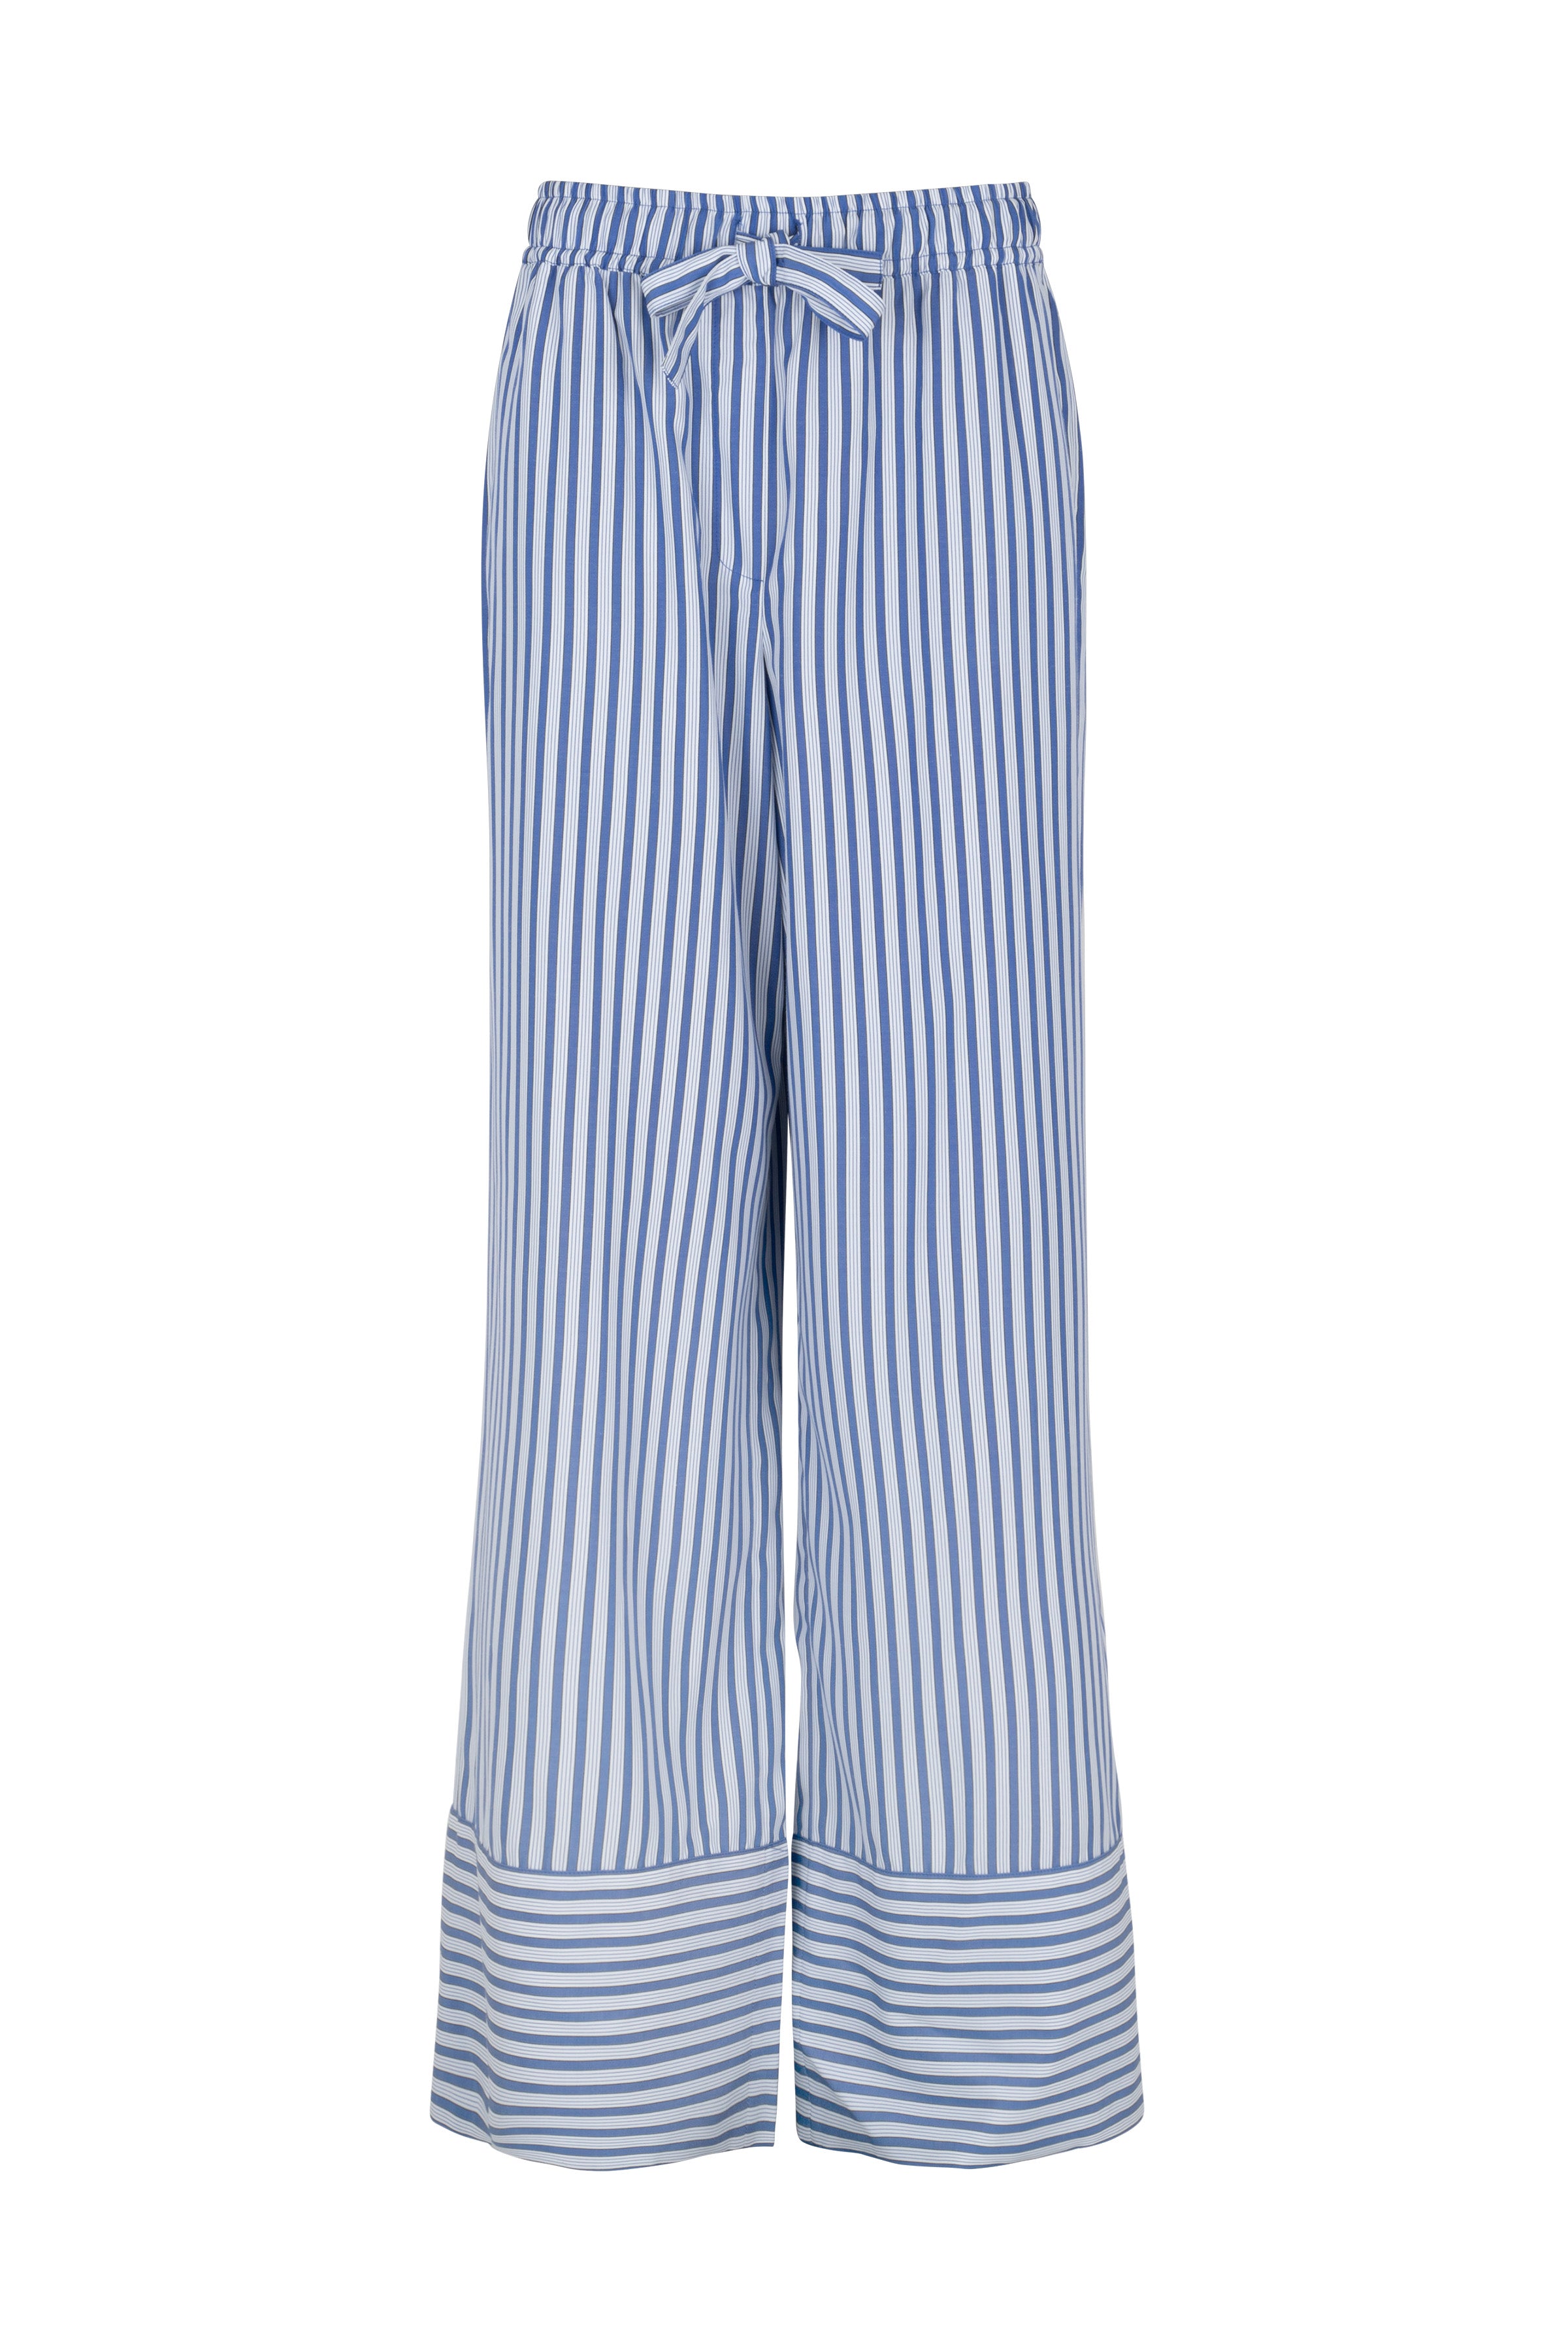 CRAS Day Pants Pants 8009 Dark Blue Stripe